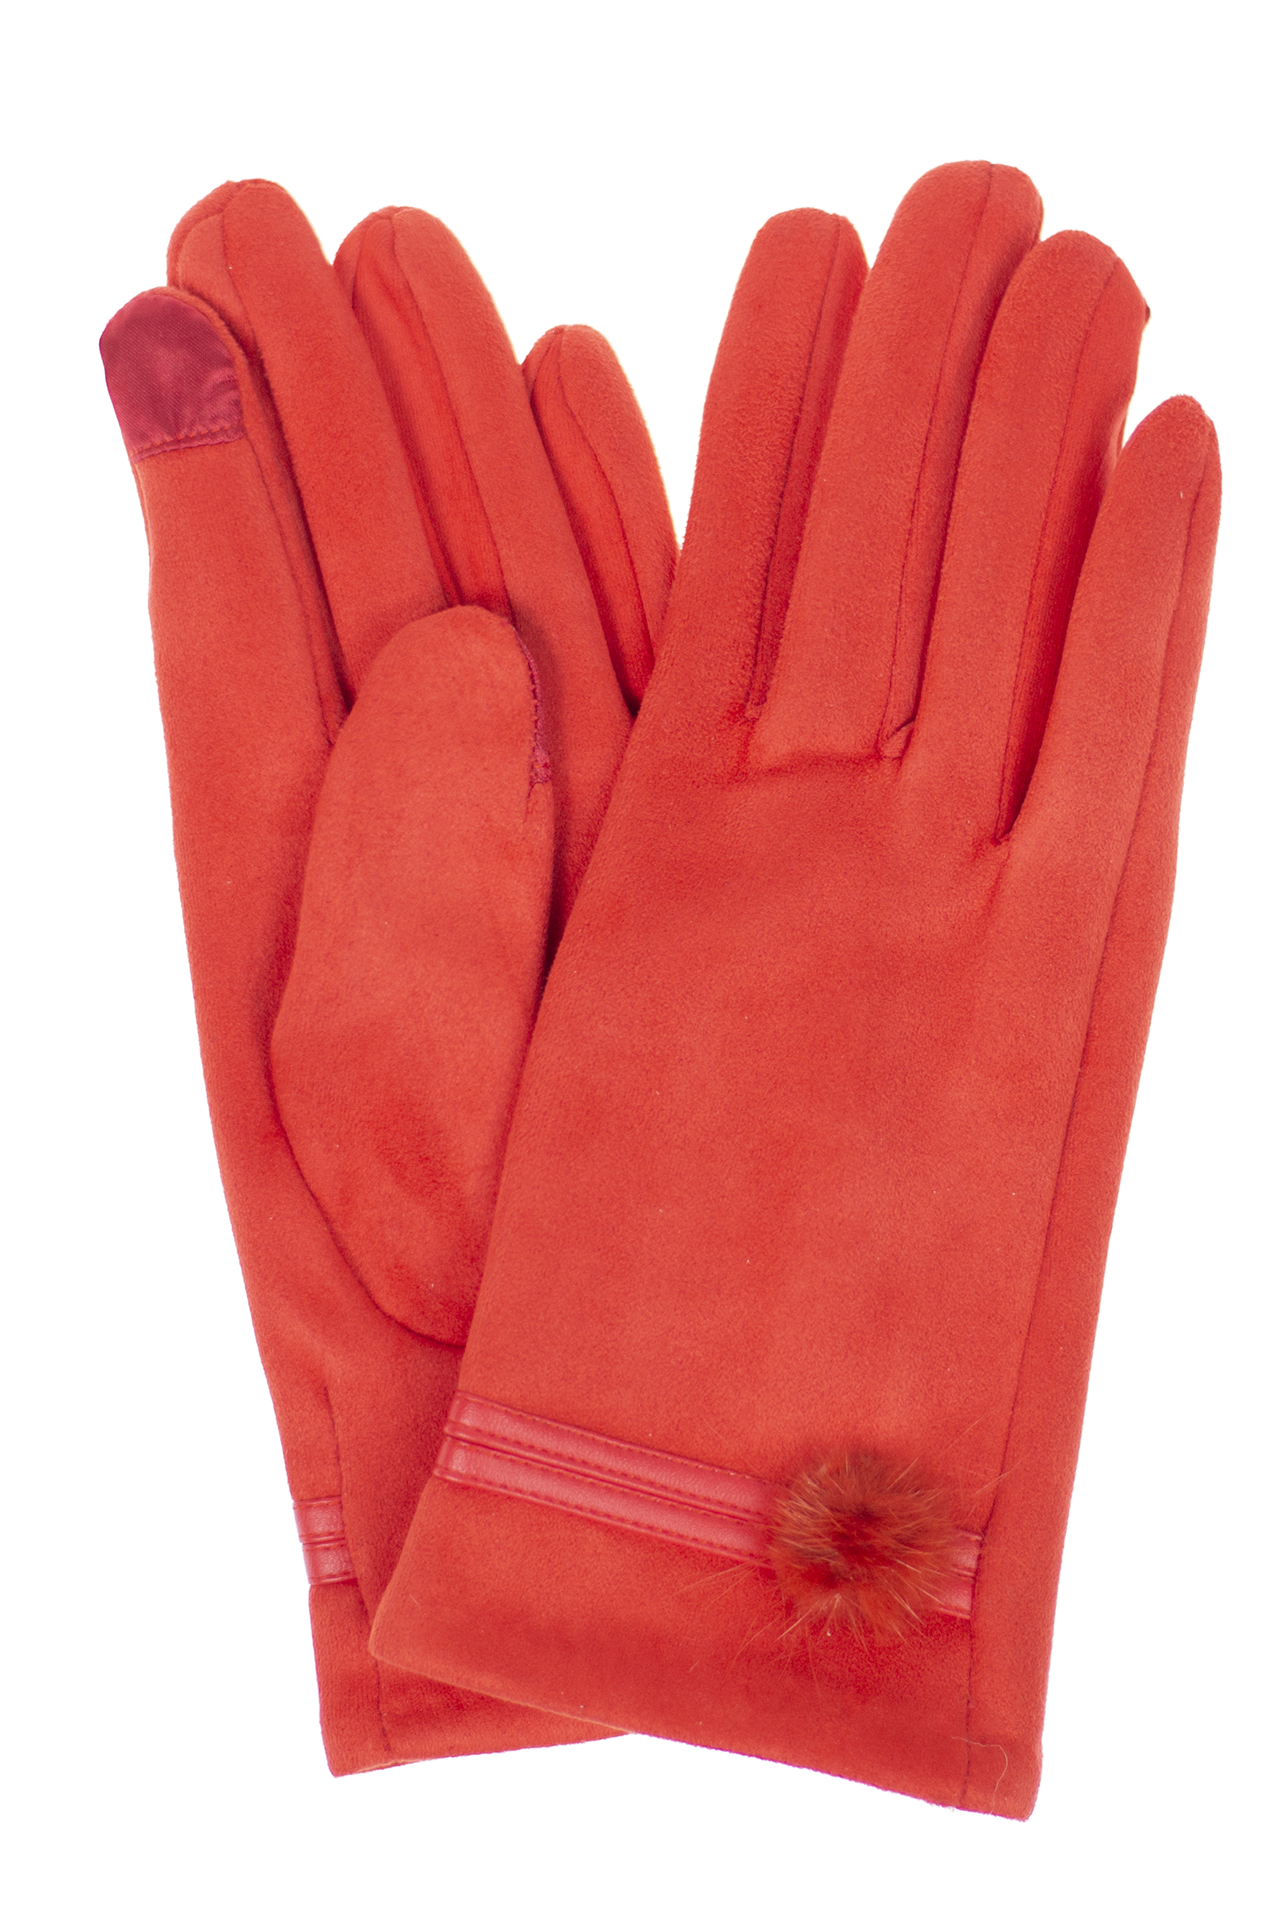 Классические женские перчатки из велюра, цвет красный